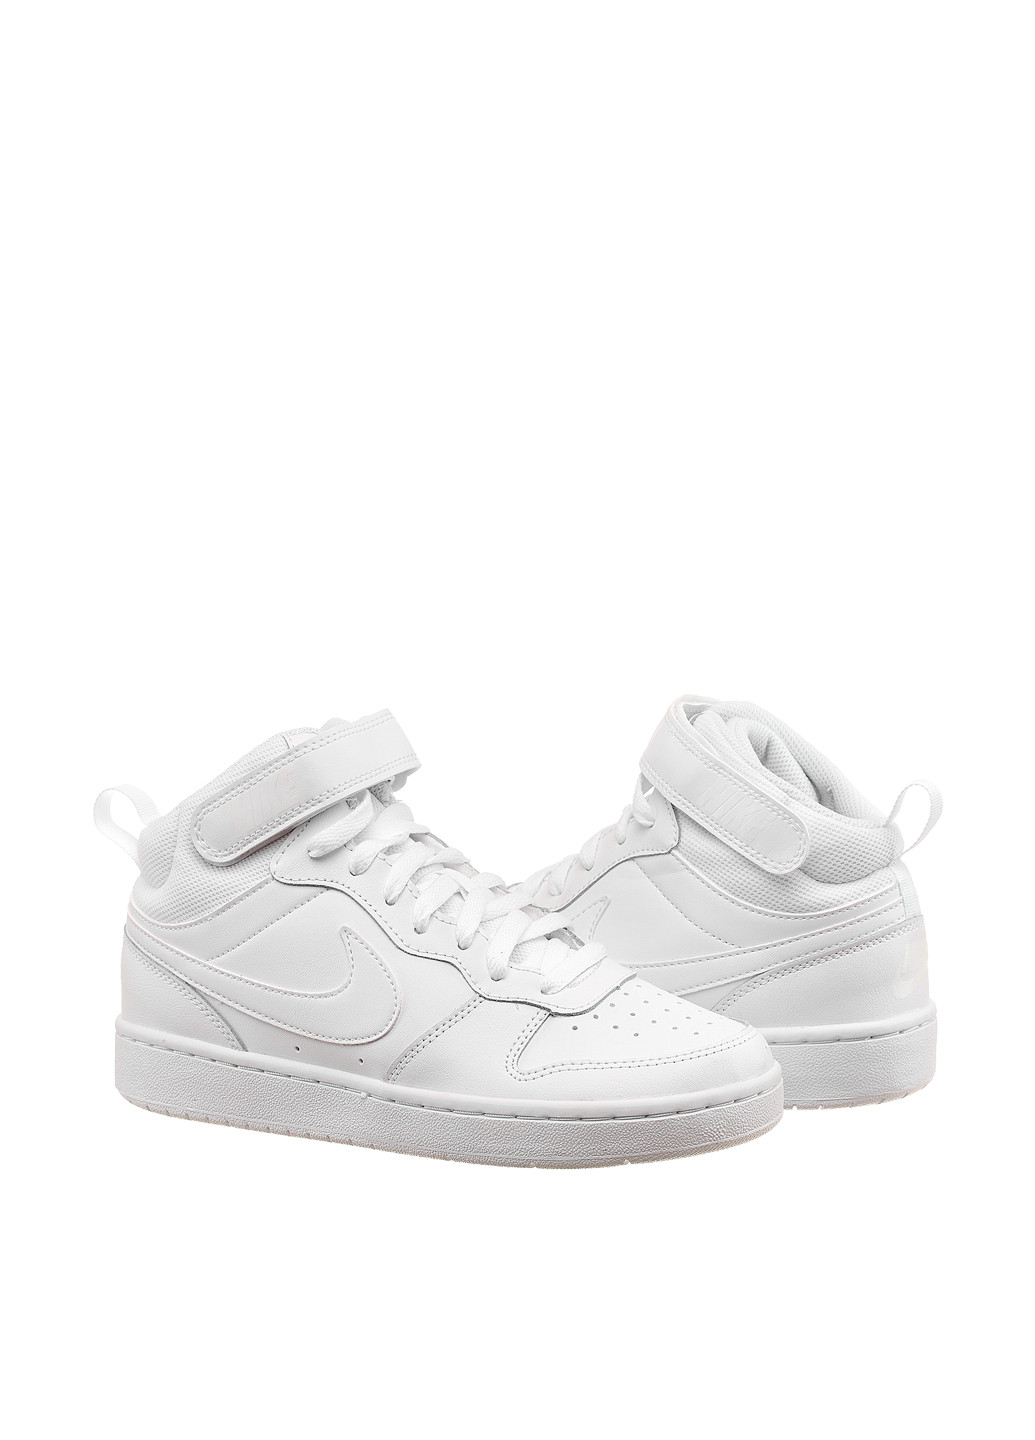 Білі осінні кросівки cd7782-100_2024 Nike COURT BOROUGH MID 2 Gs